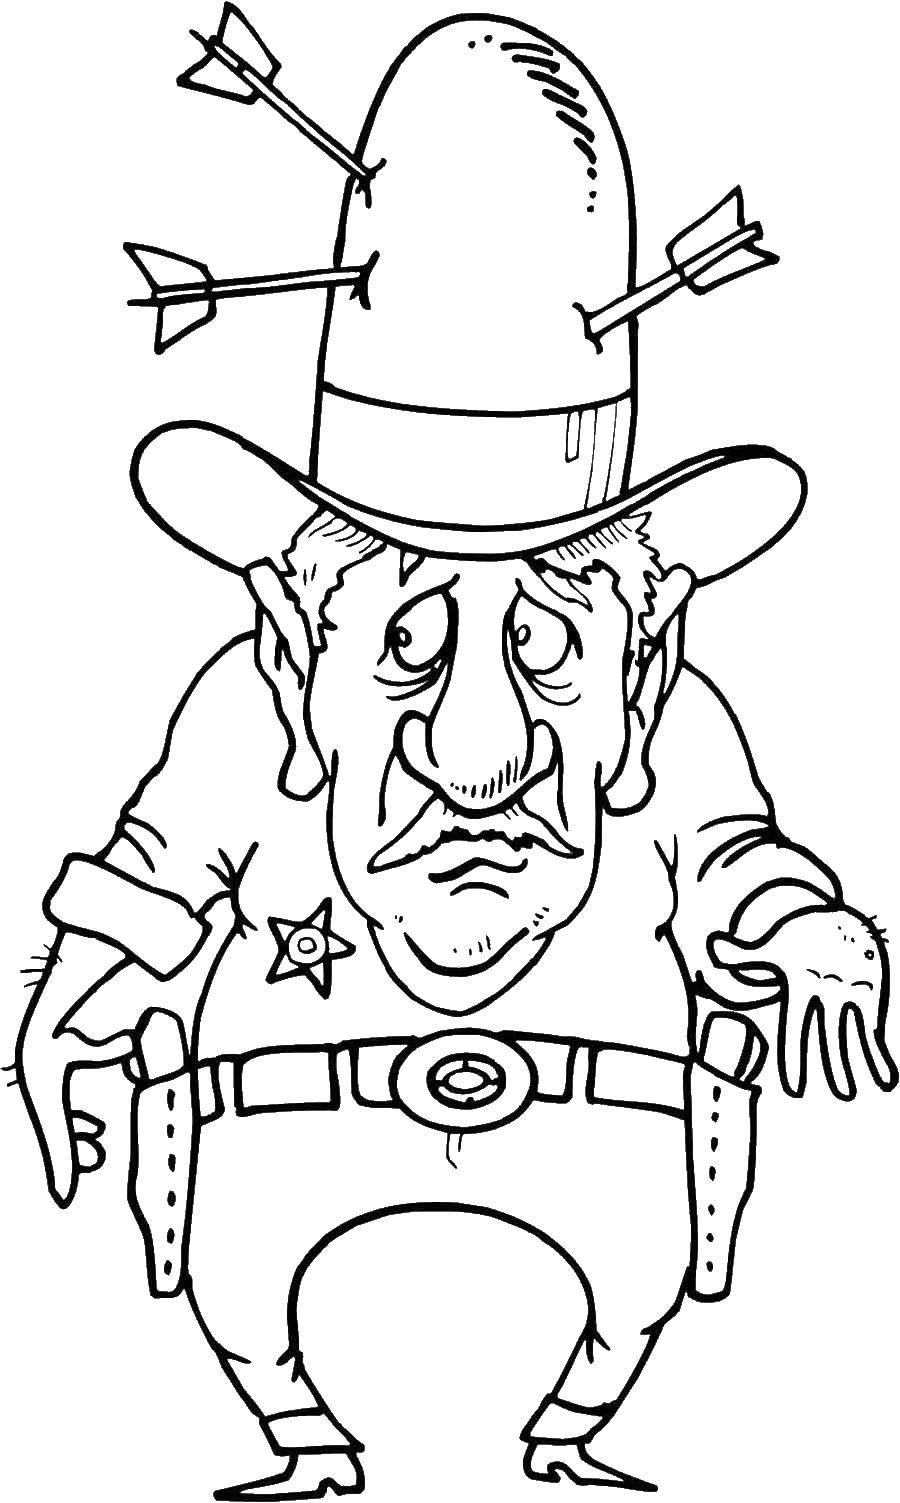 Название: Раскраска Шериф с шляпой. Категория: раскраски. Теги: шериф, значок, шляпа.